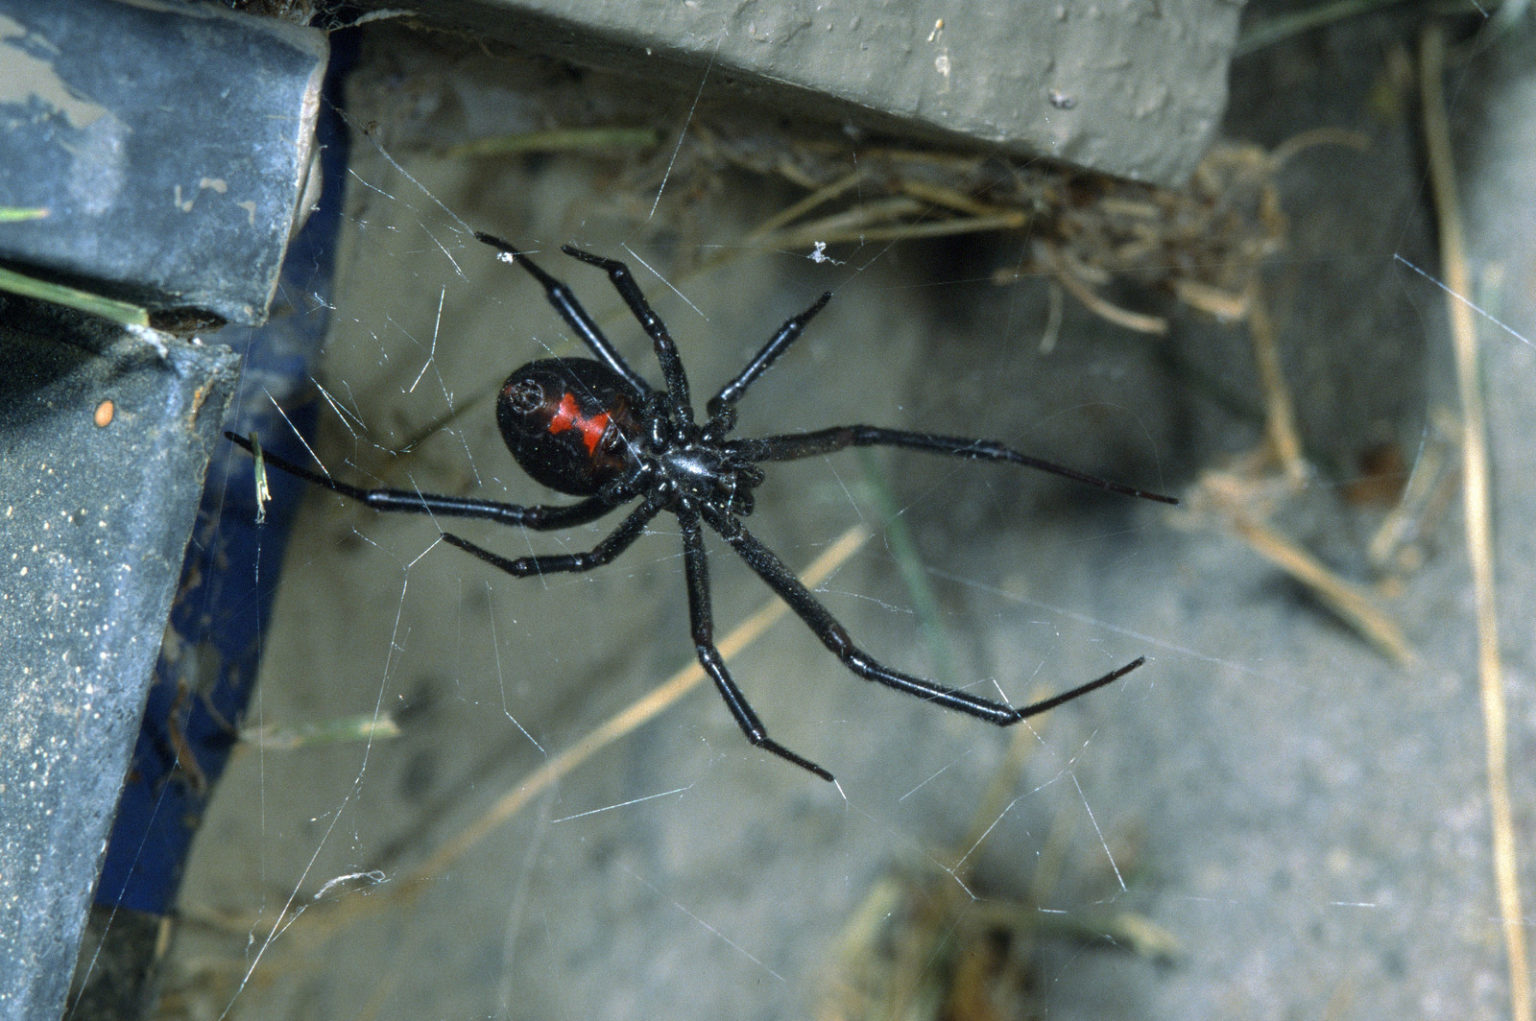 Фото паука черная вдова на руке